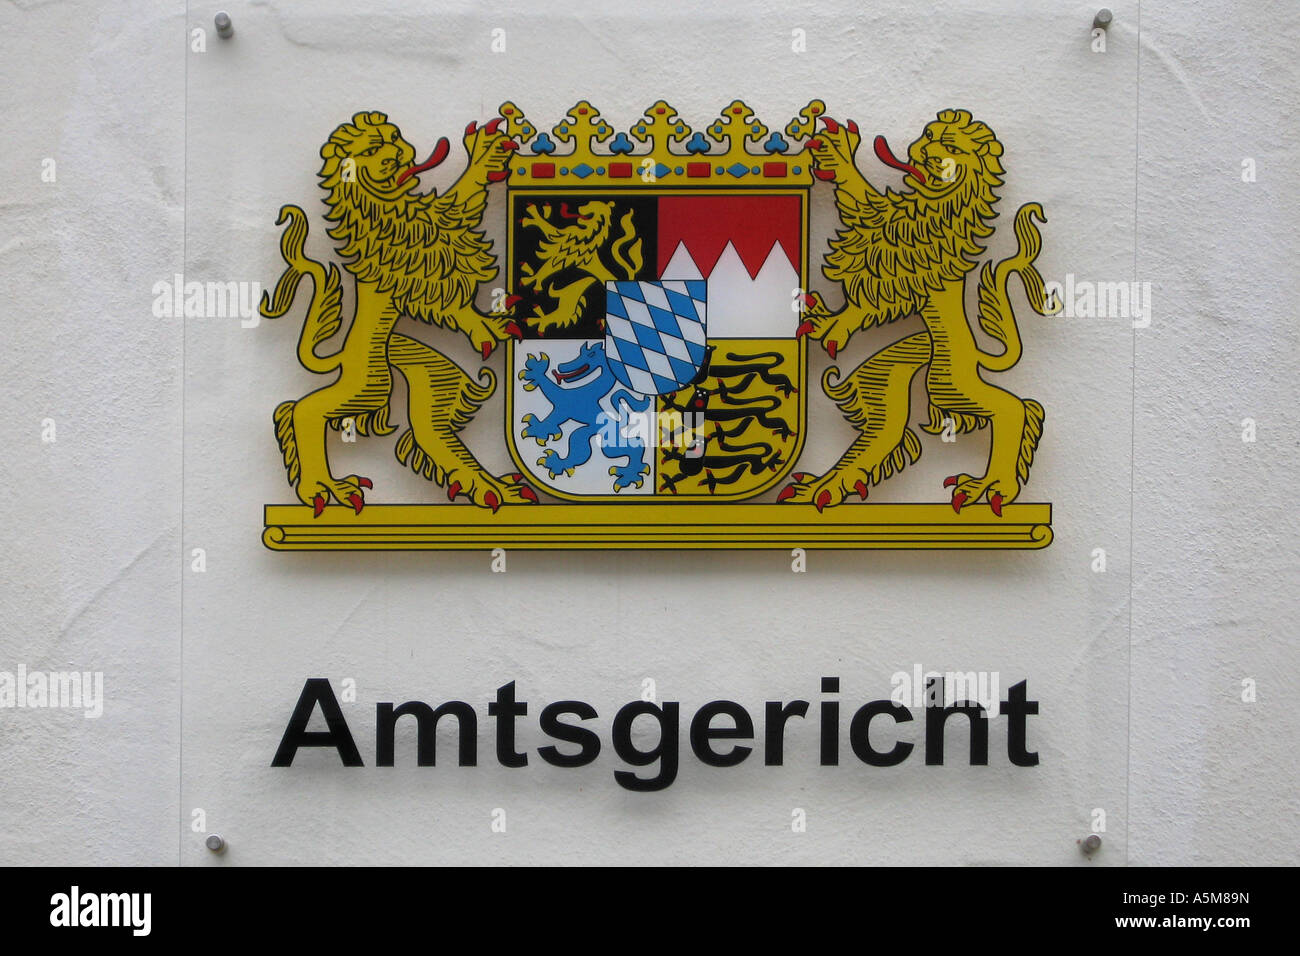 Deutschland Germany Germania Bayern Bavaria Baviera Bavière Landeswappen Hoheitszeichen Amtsgericht Gerichtsgebäude heraldic Stock Photo